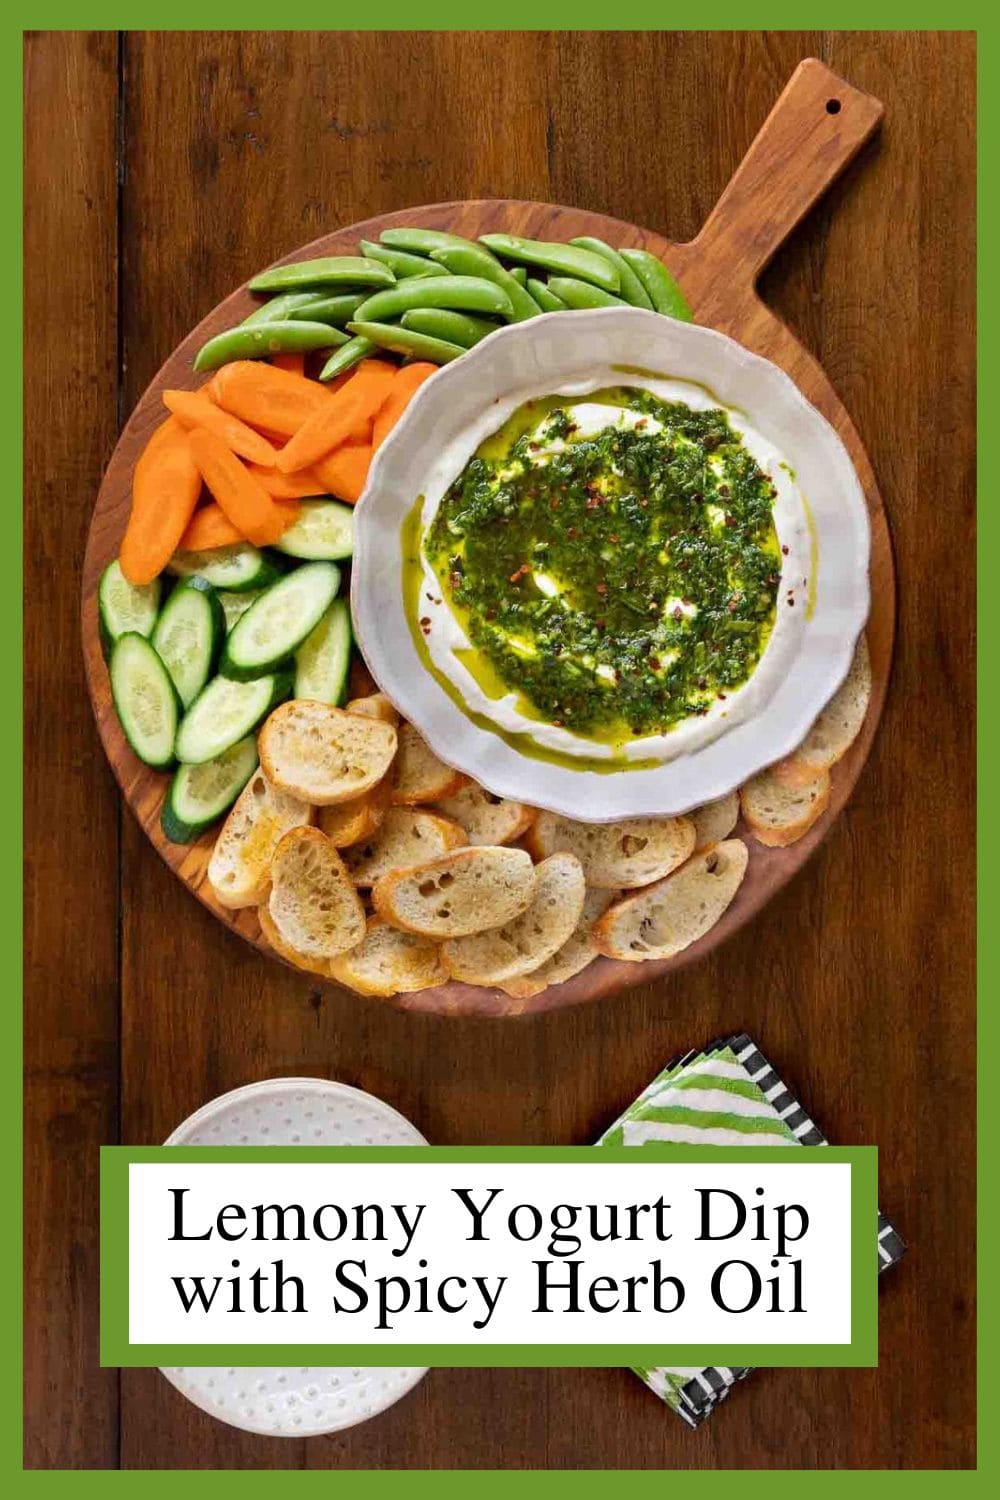 Lemony Yogurt Dip with Spicy Herb Oil